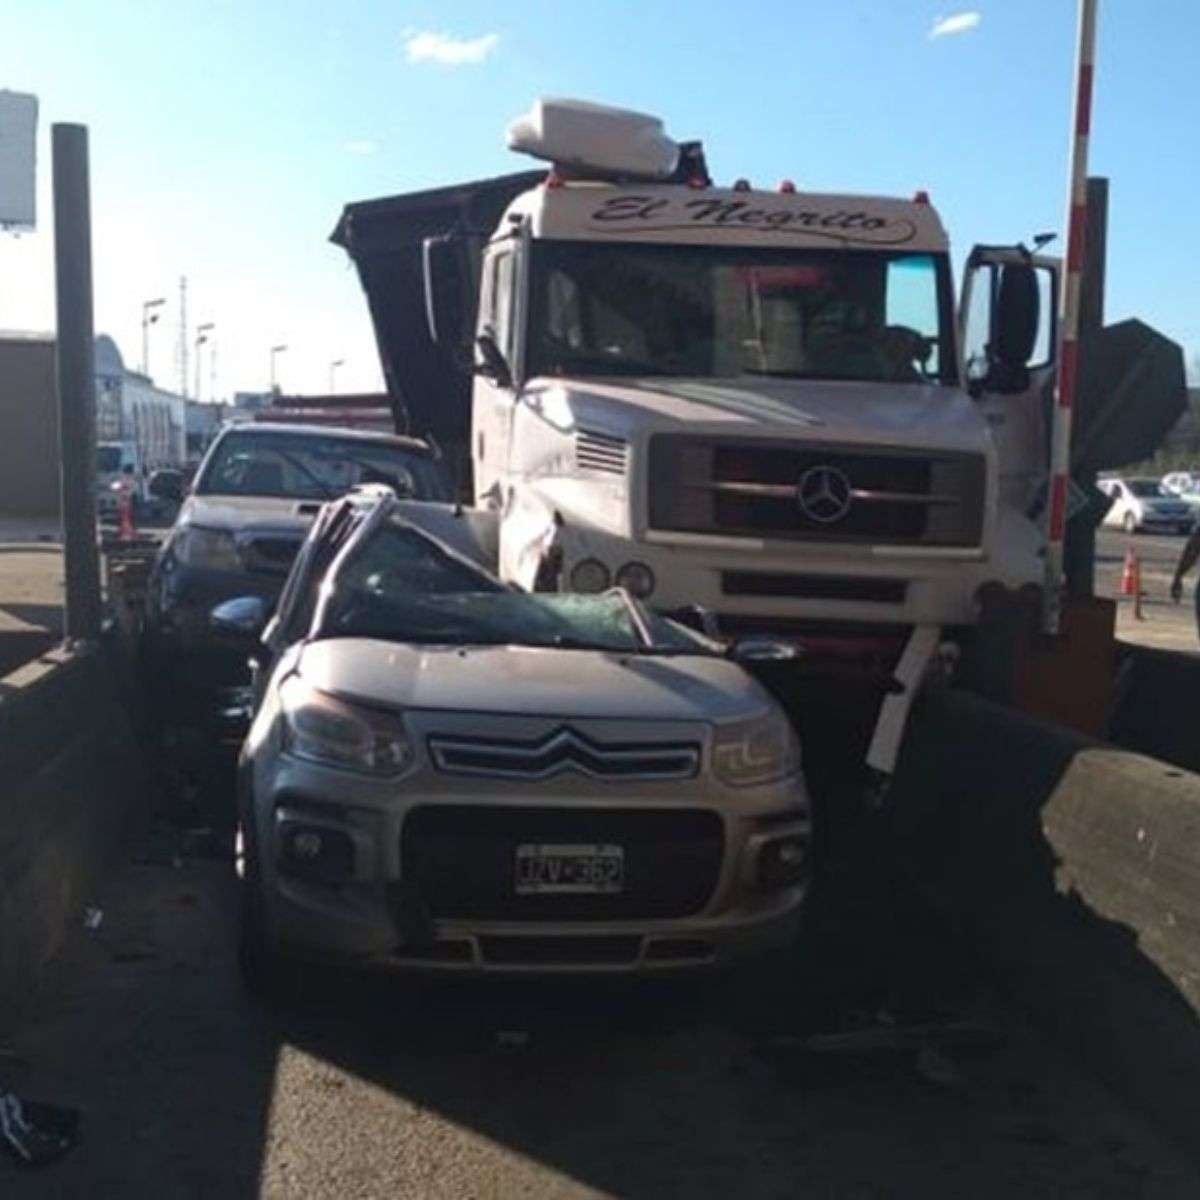 Un camión se quedó sin frenos y aplastó a un auto que esperaba en el peaje